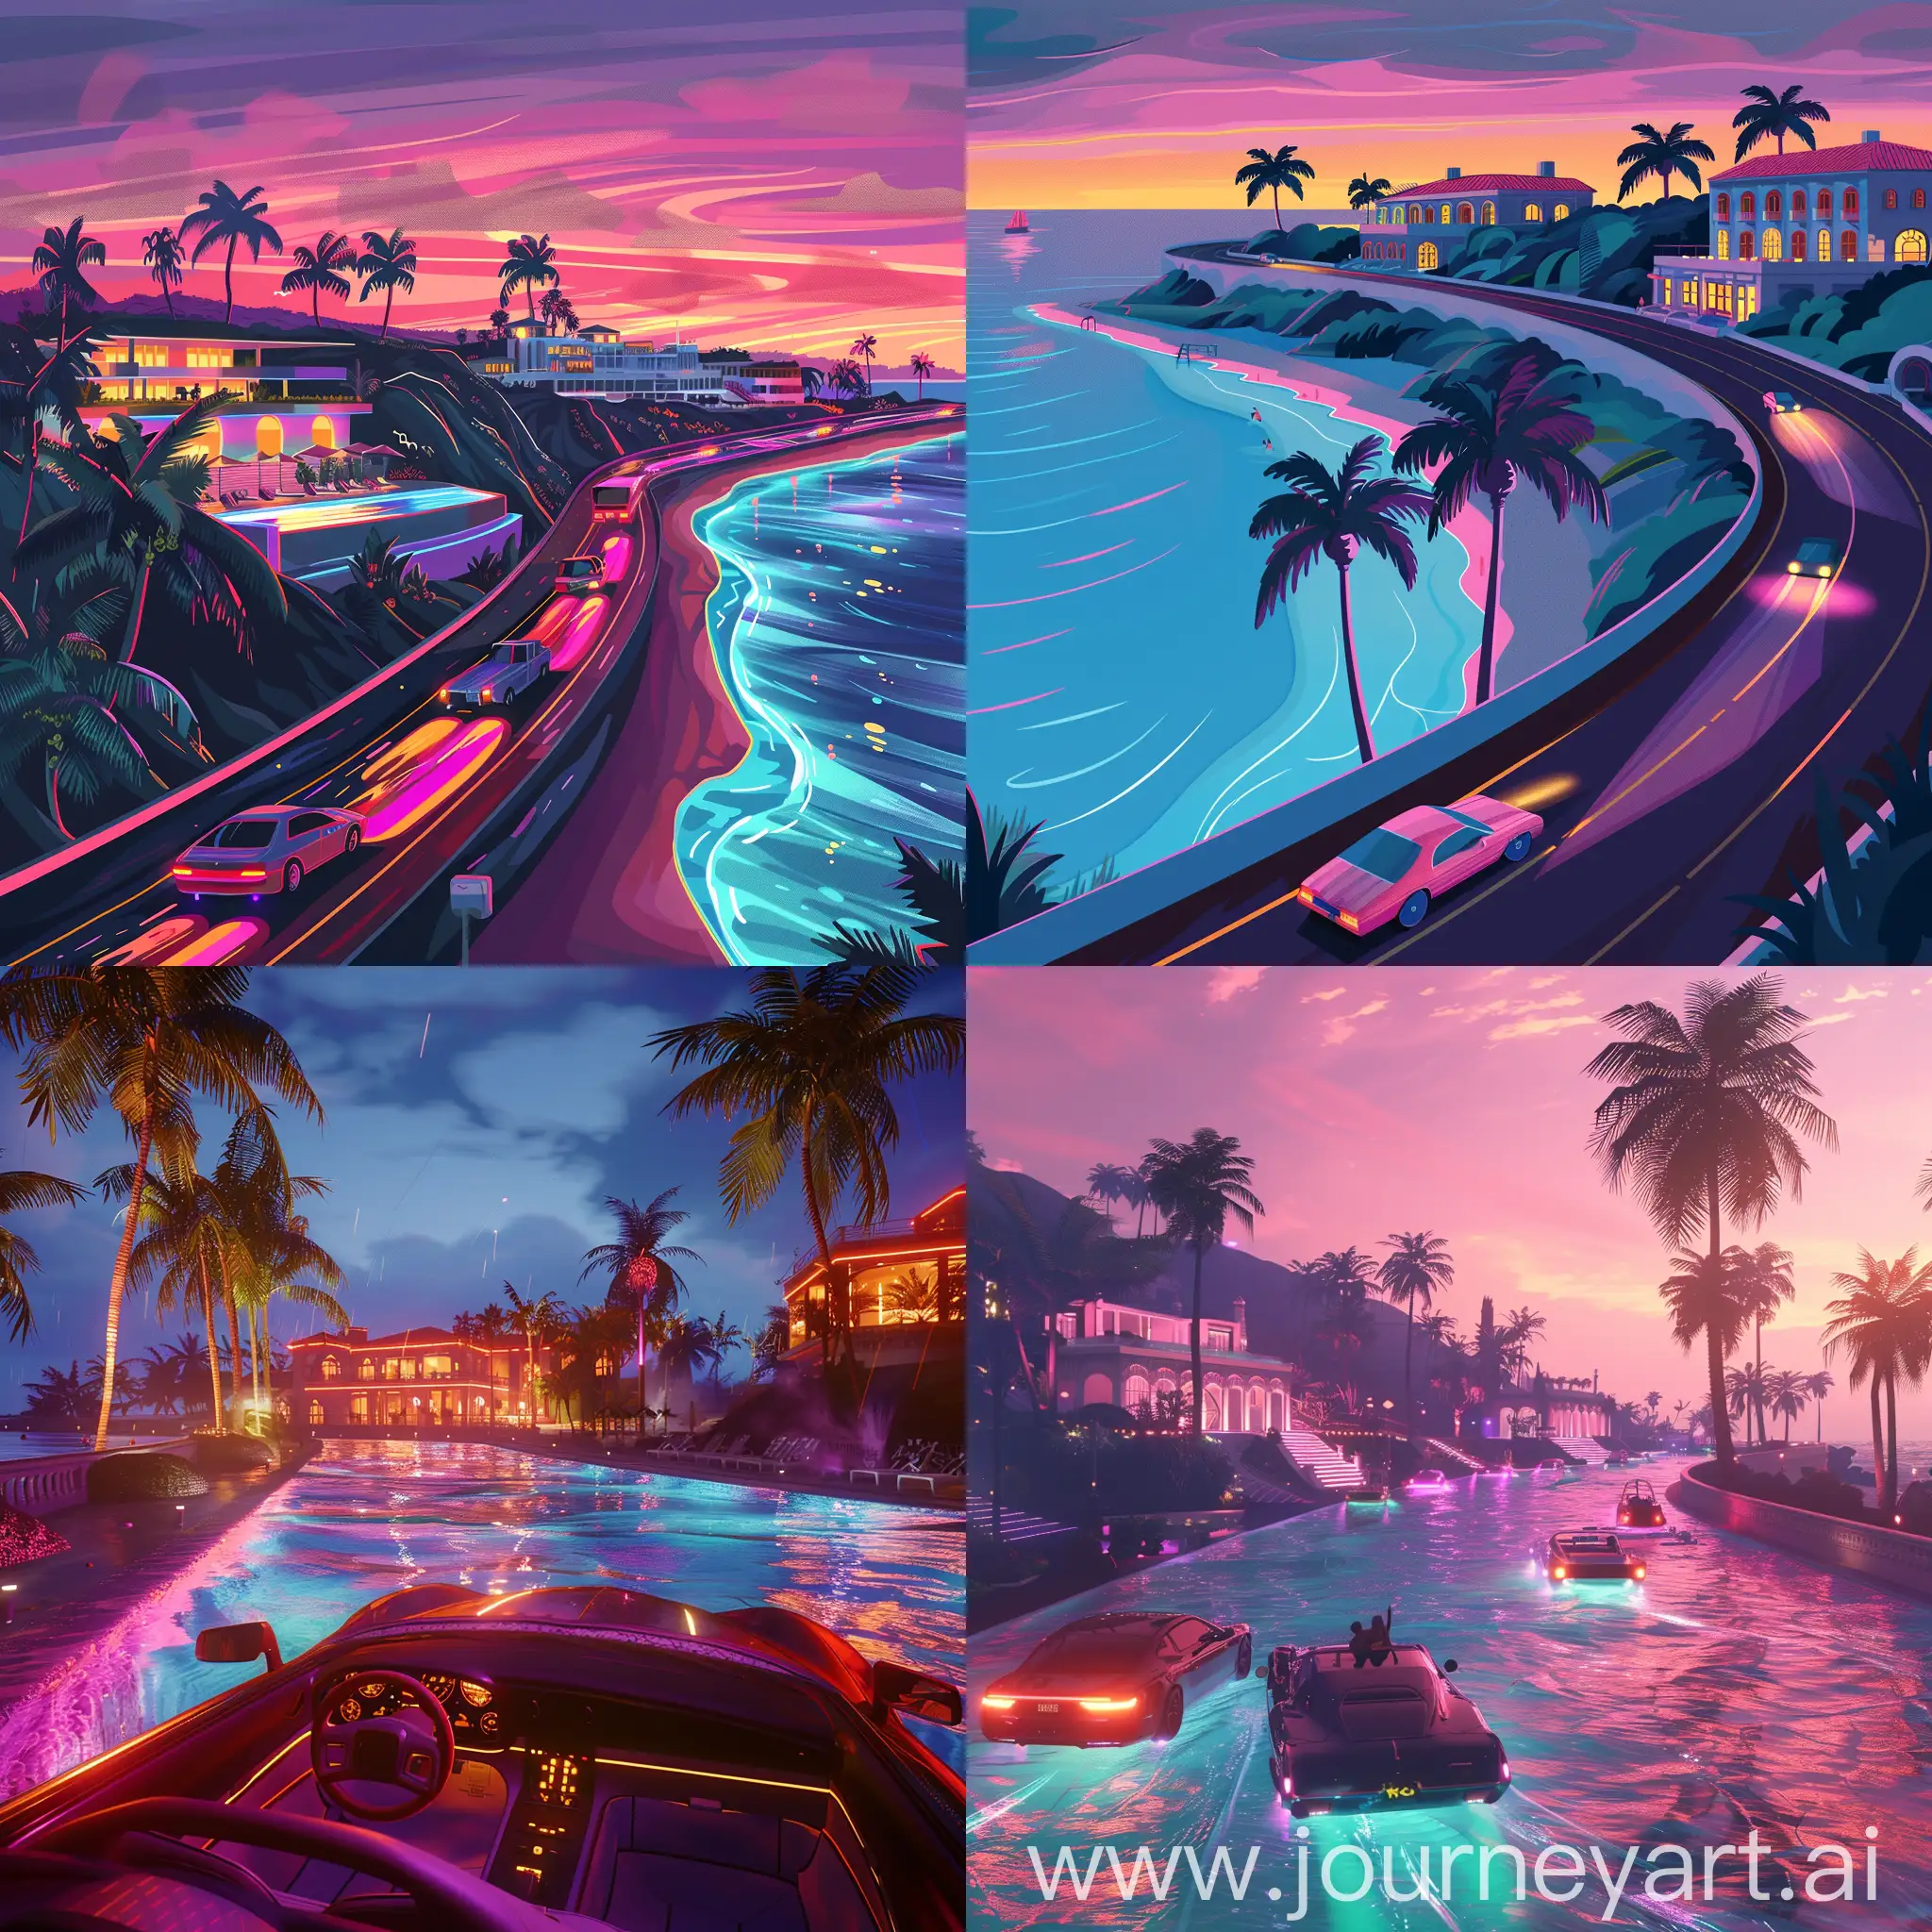 驾车兜风、午后海滩、泳池派对、霓虹闪烁、岸边豪宅、烈阳公路，棕榈树